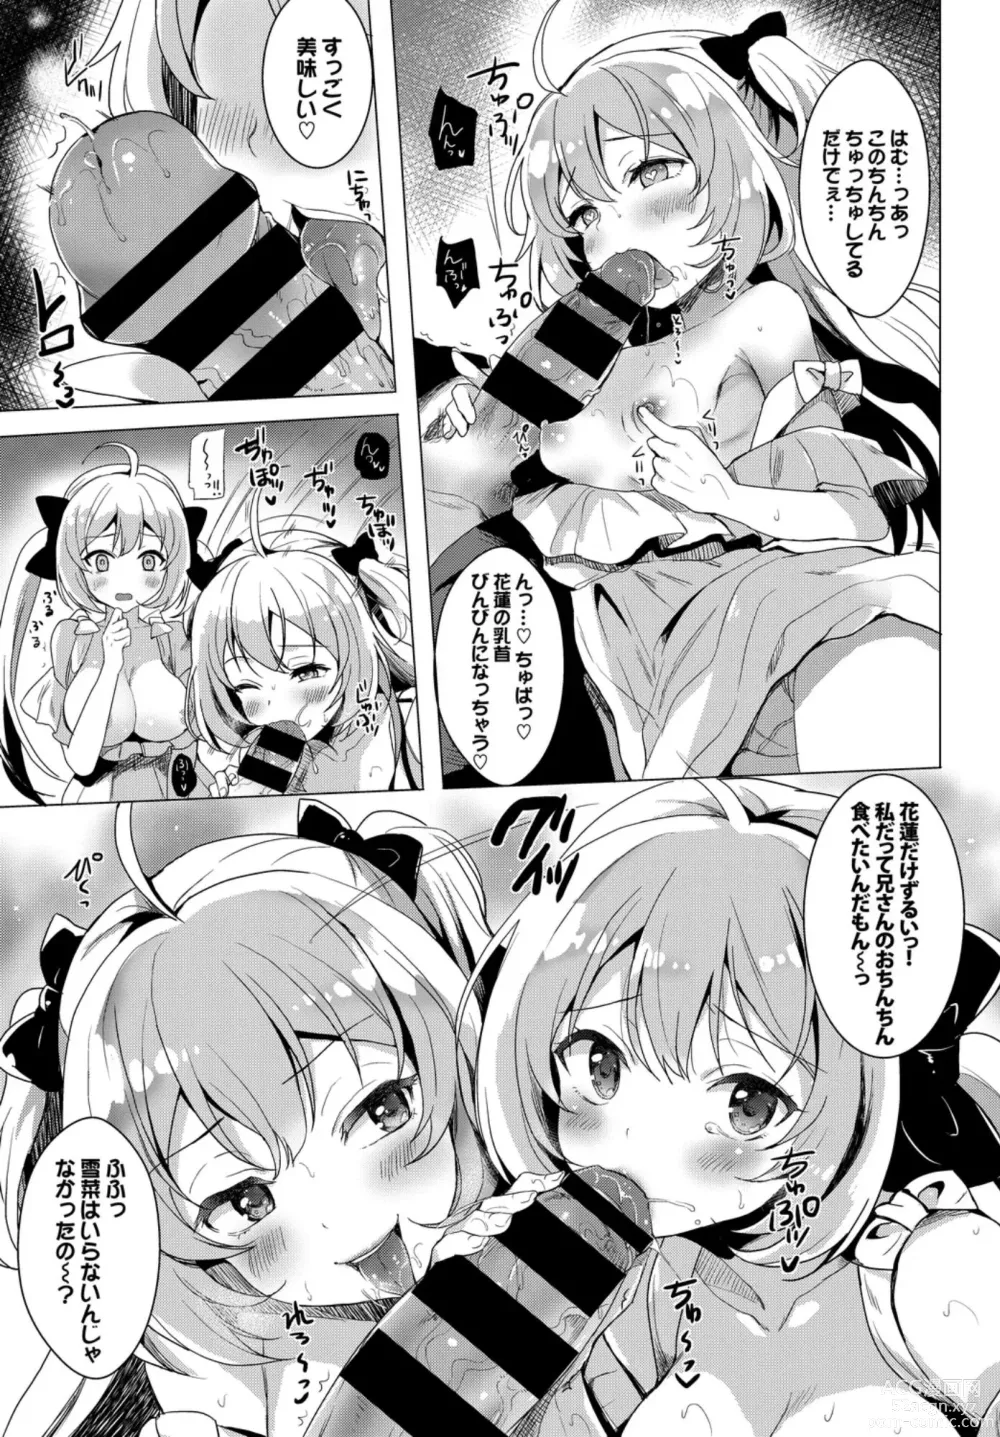 Page 95 of manga Oppai Sand de Shouten Shichao VOL. 2 ~Futago Hen~